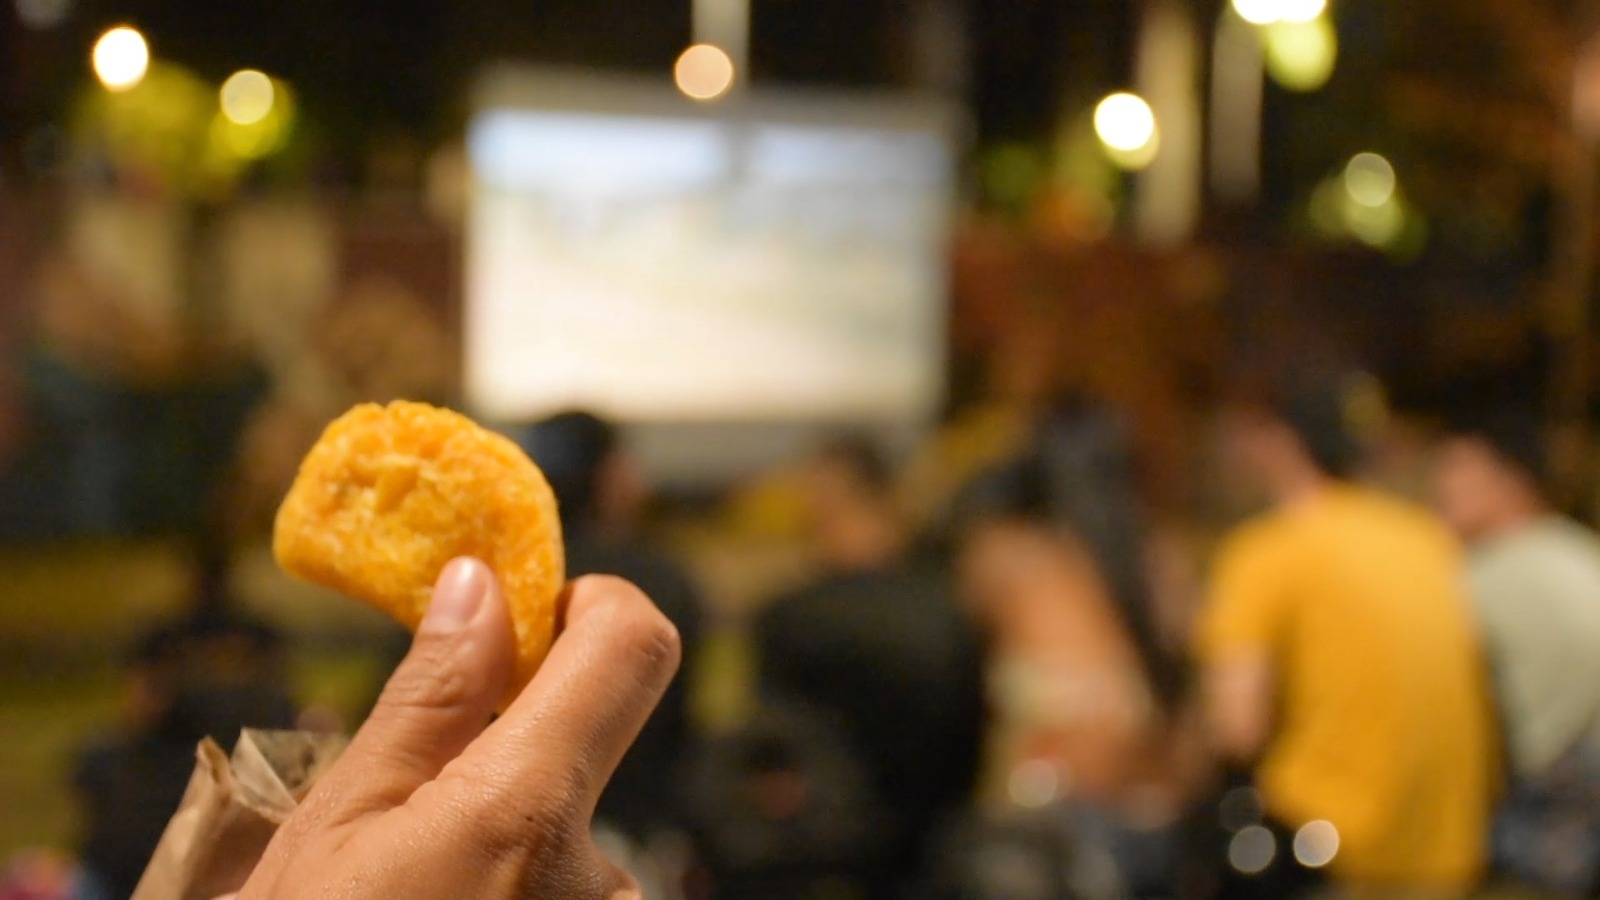 Con cine y empanadas, Medellín busca devolverle la vida al Parque Bicentenario